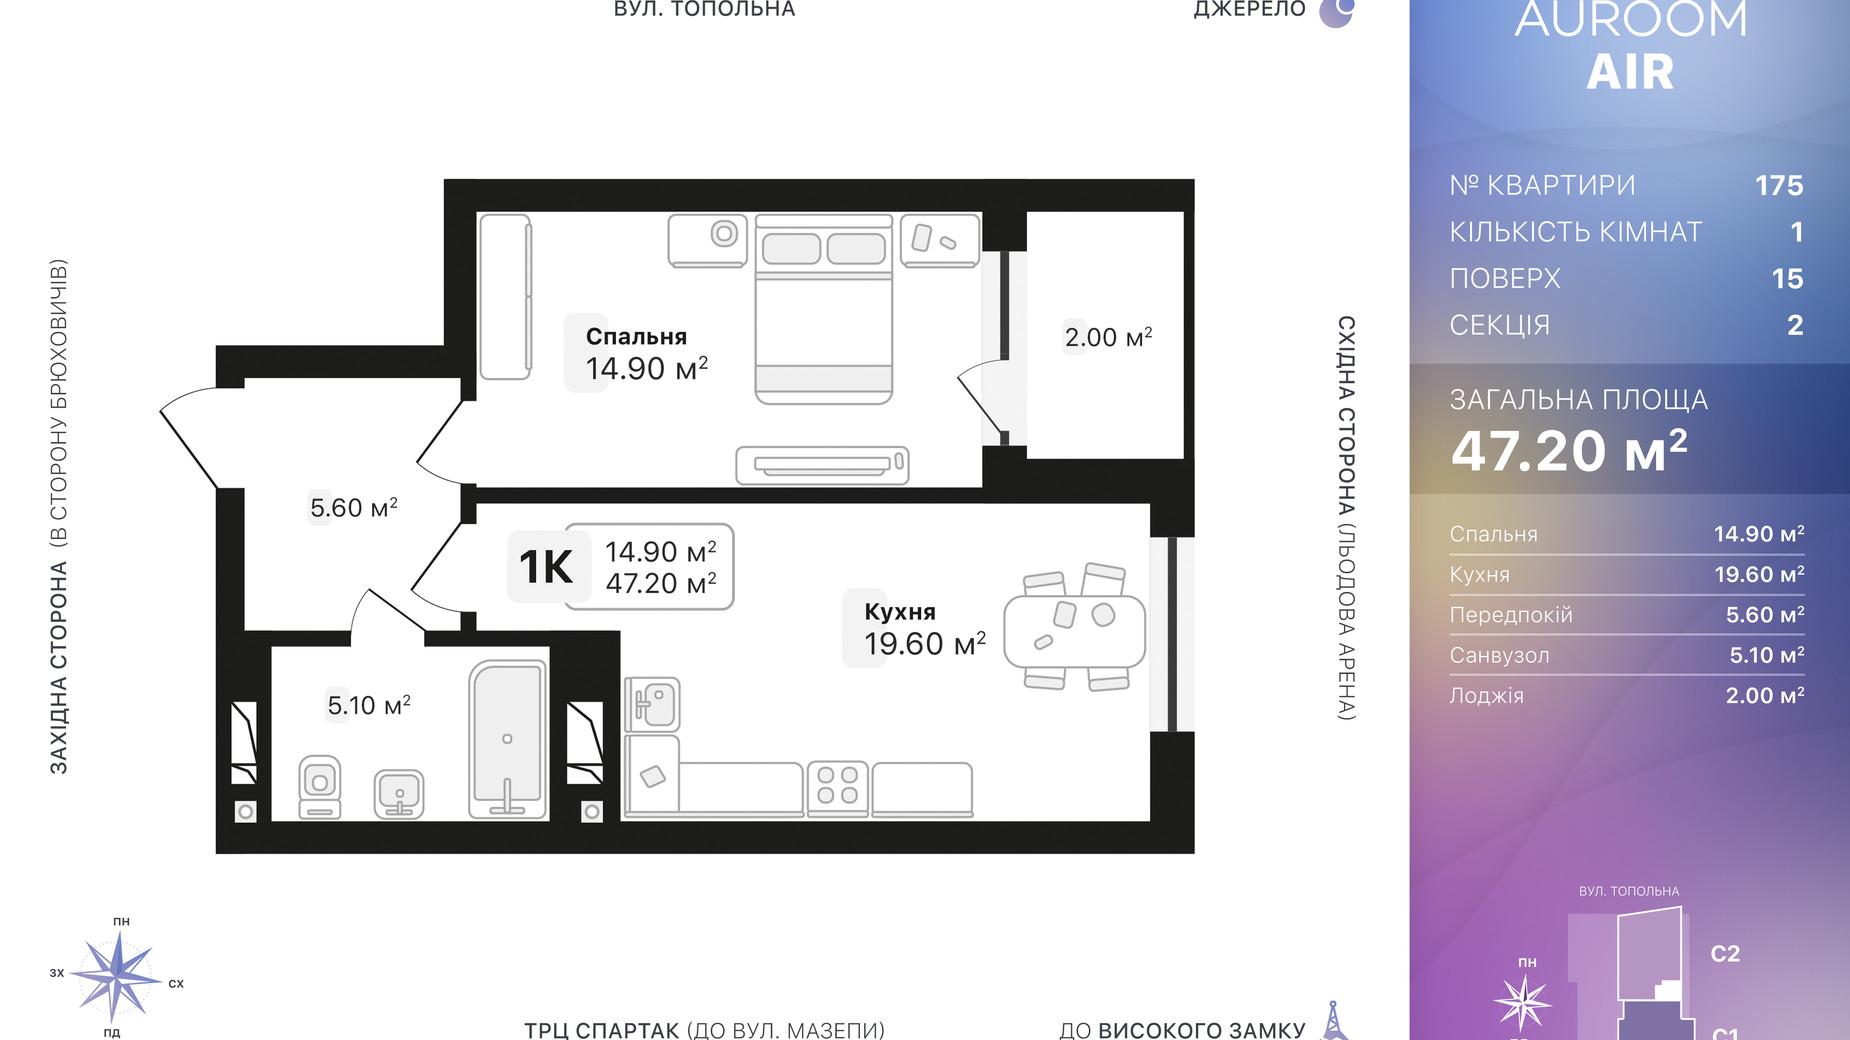 Планировка 1-комнатной квартиры в ЖК Auroom Air 47.2 м², фото 552442